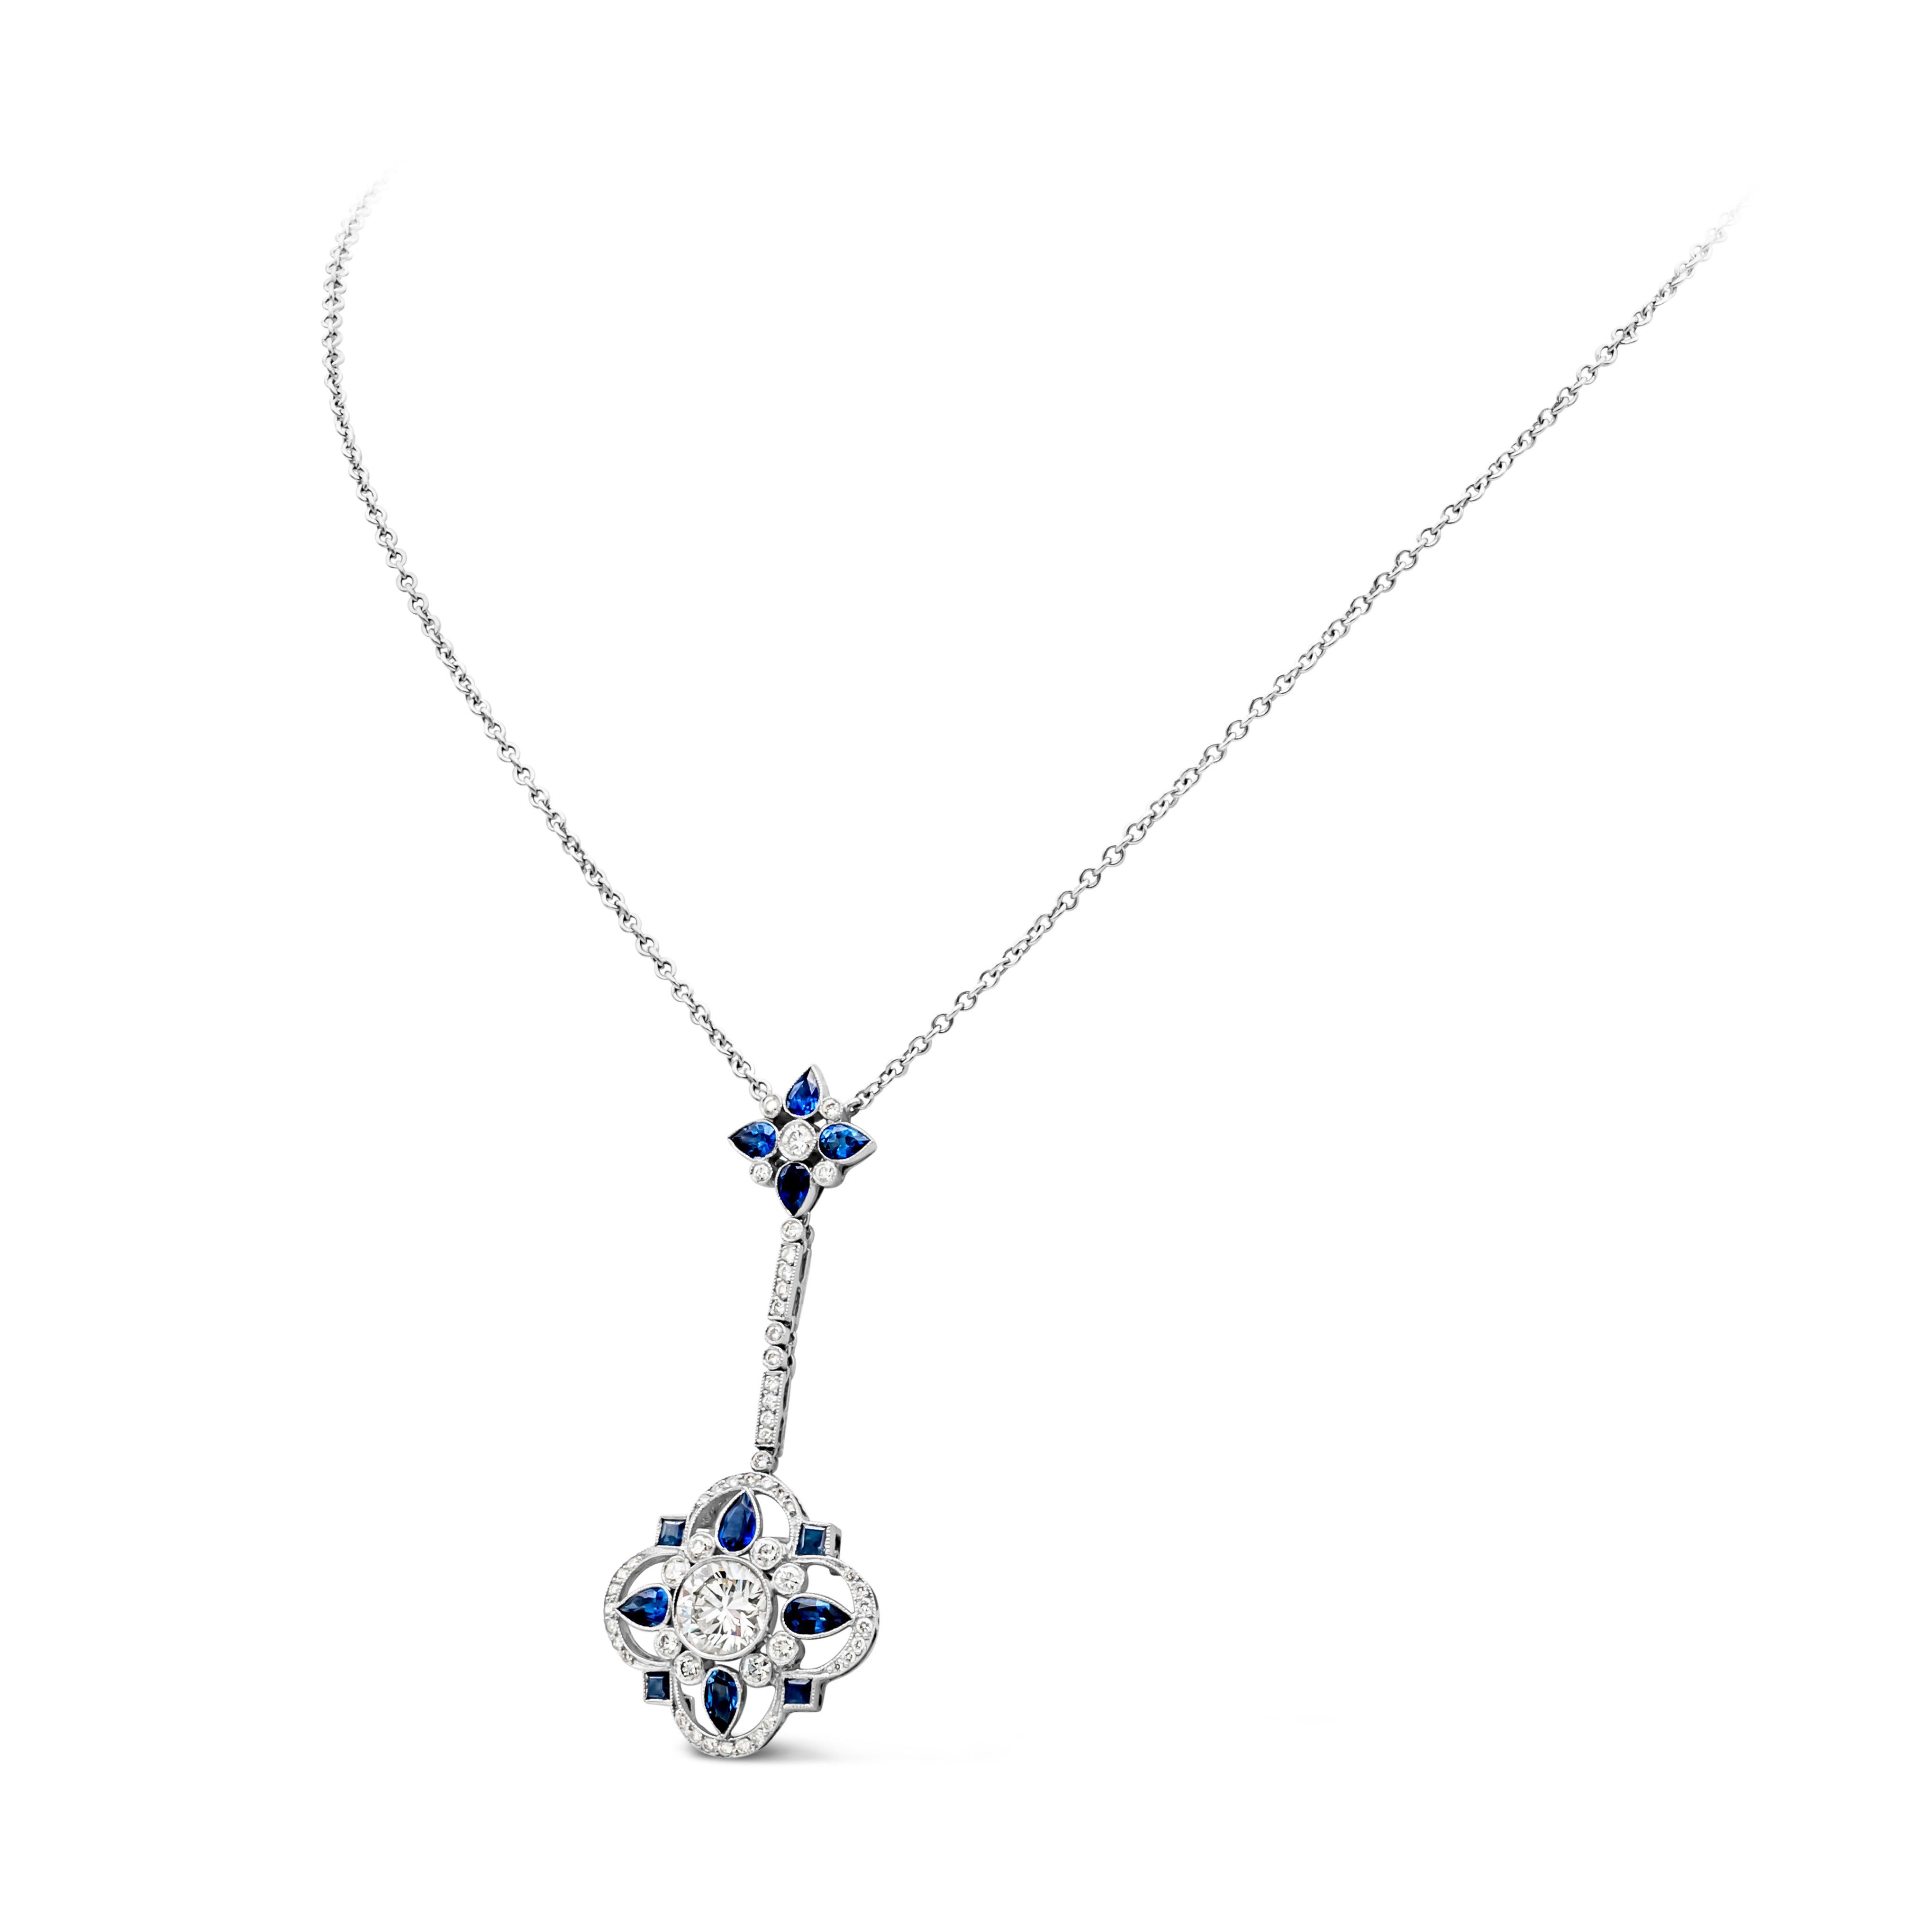 Art Nouveau Vintage 3.50 Carats Total Mixed Cut Blue Sapphire and Diamond Pendant Necklace For Sale